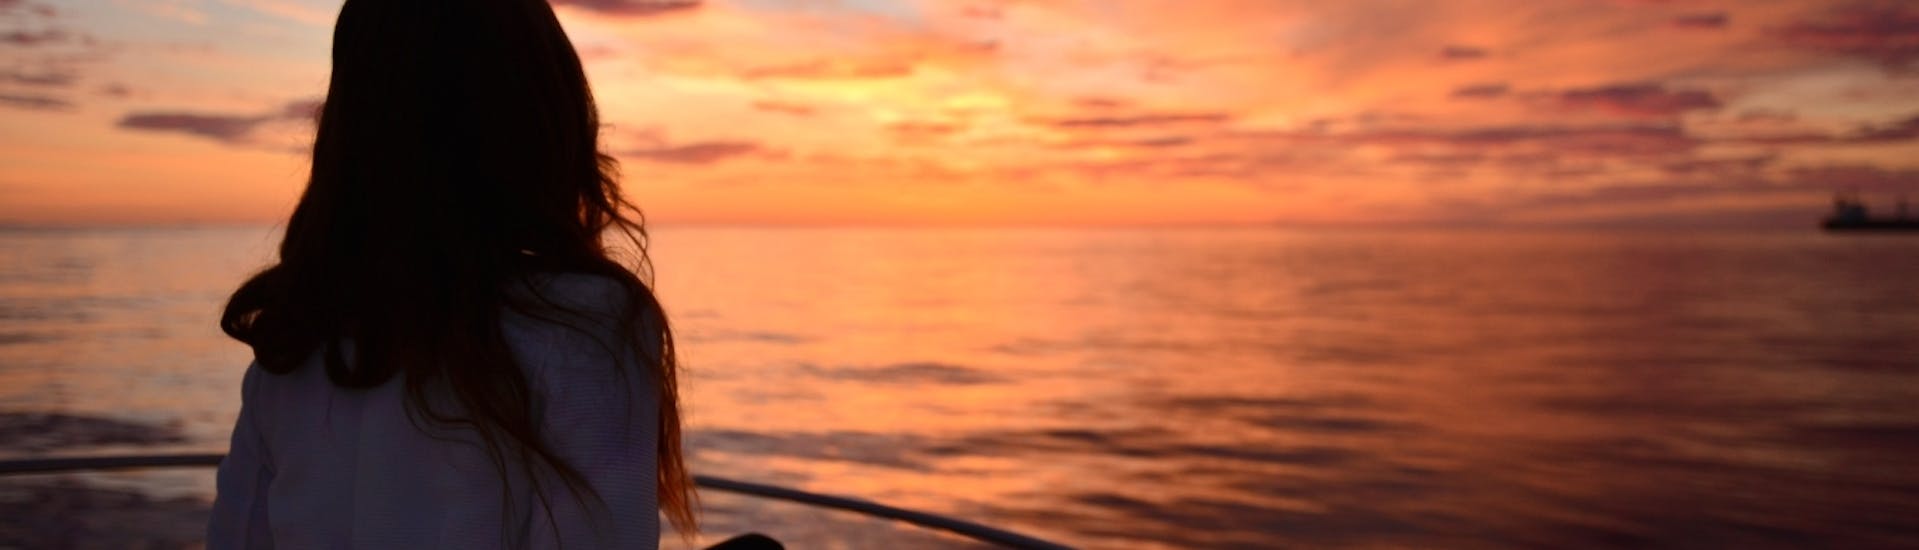 Bootstour bei Sonnenuntergang entlang der Küste von Ibiza